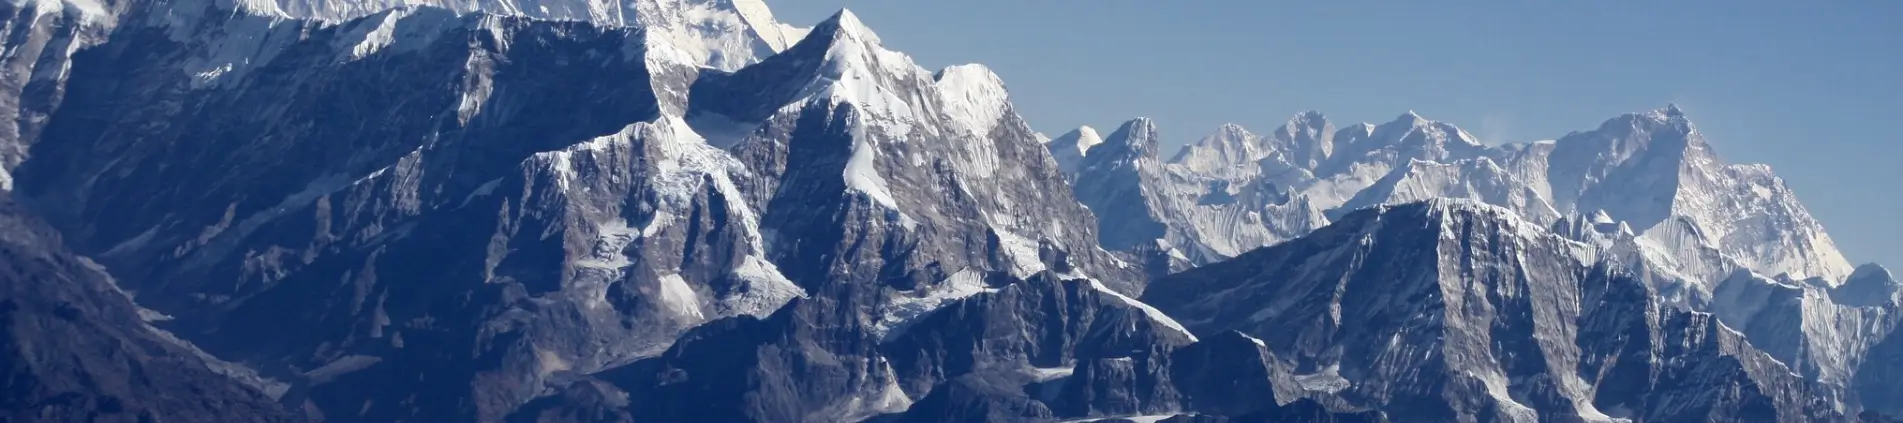 Peak Climbing in Himalayas